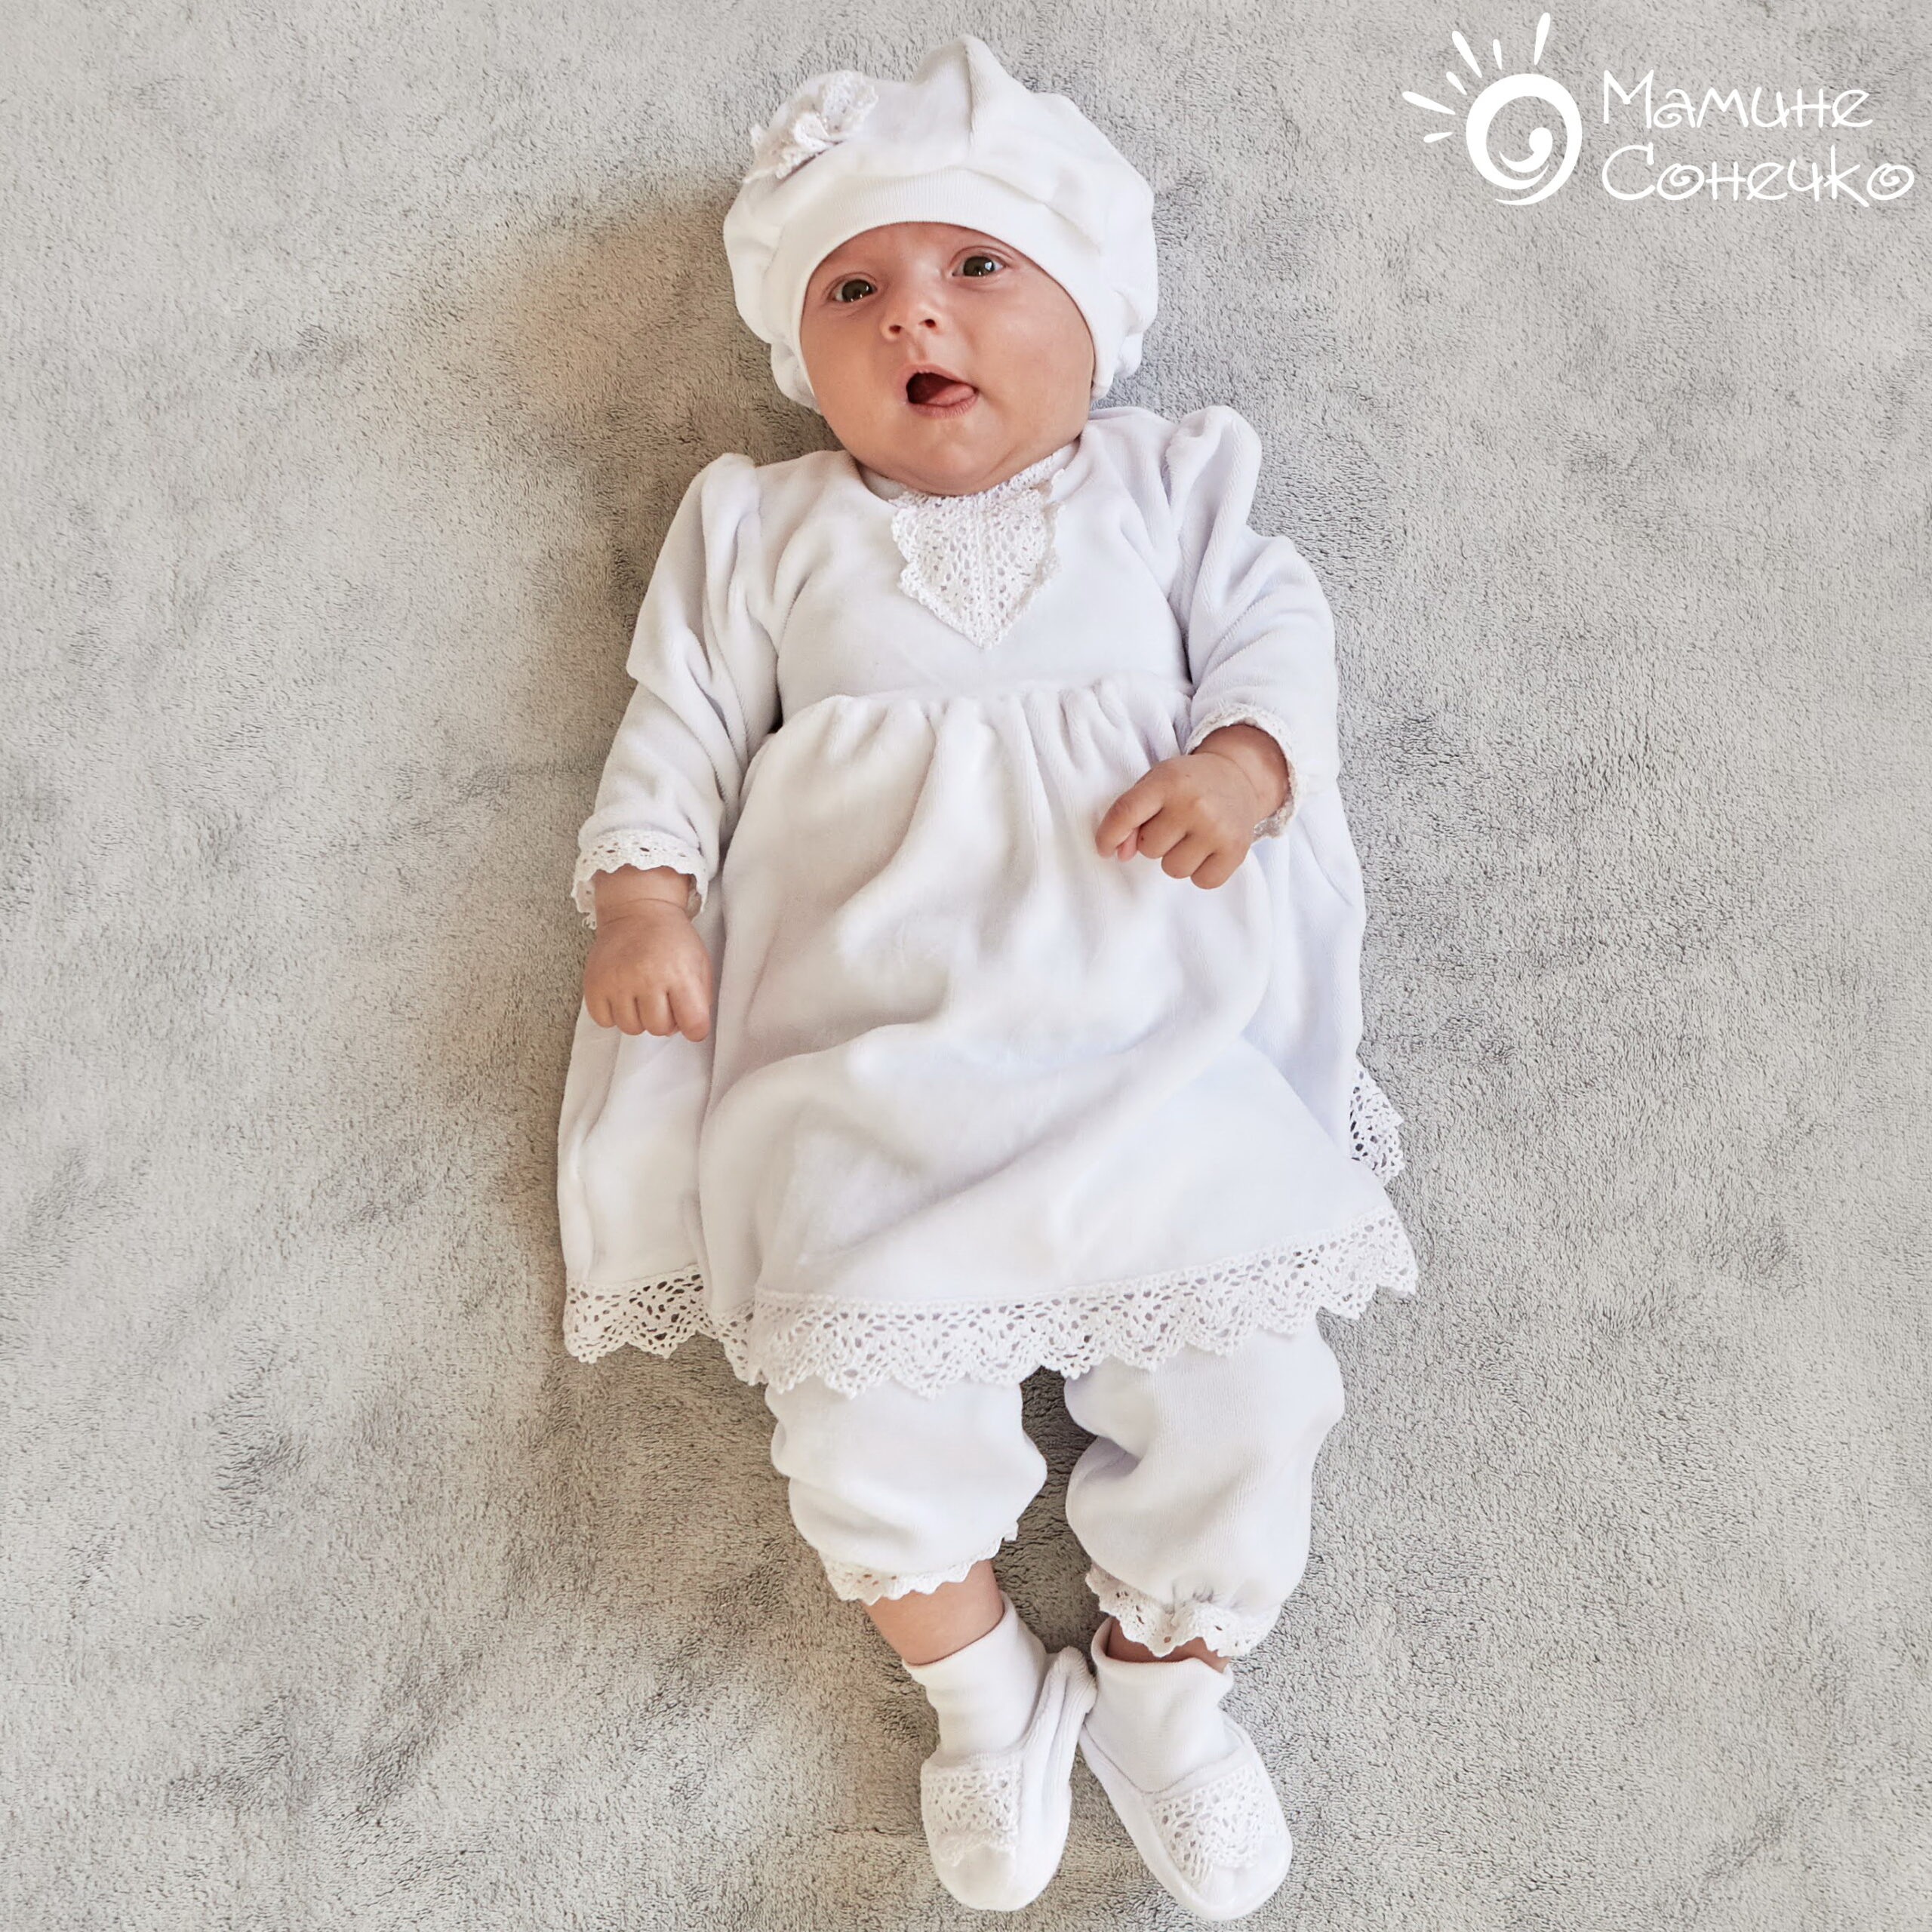 Costume for the baptism of a girl “Lala-kralea”, white velour